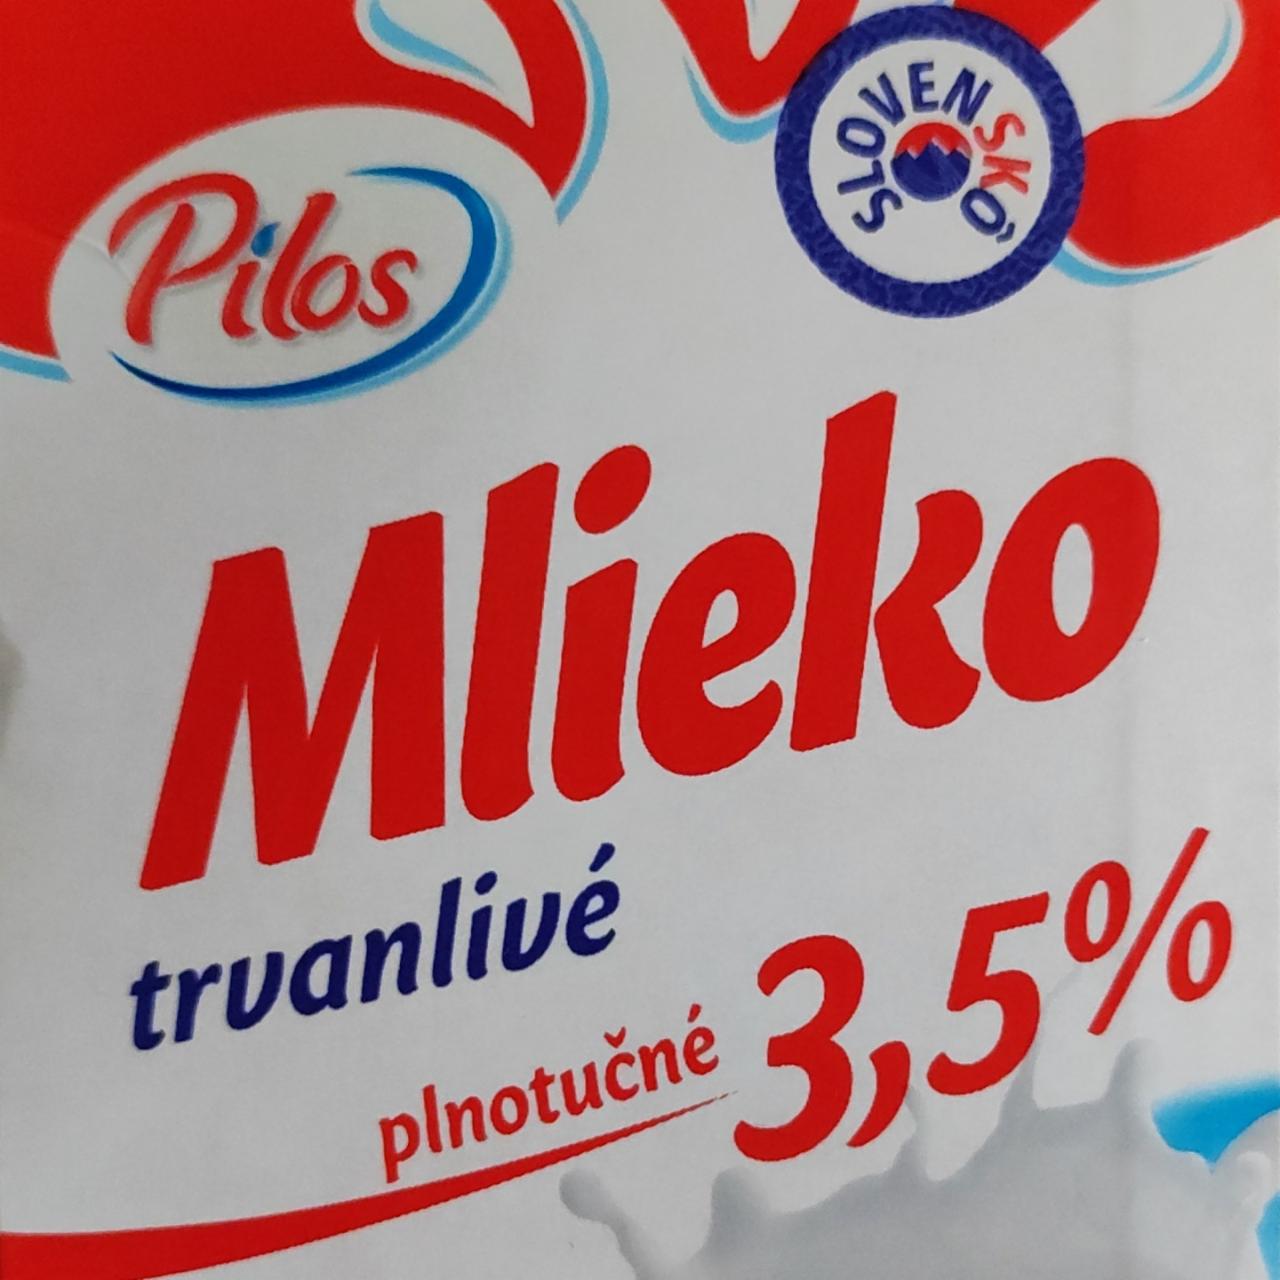 Képek - Mlieko trvanlivé plnotuučné 3,5% Pilos